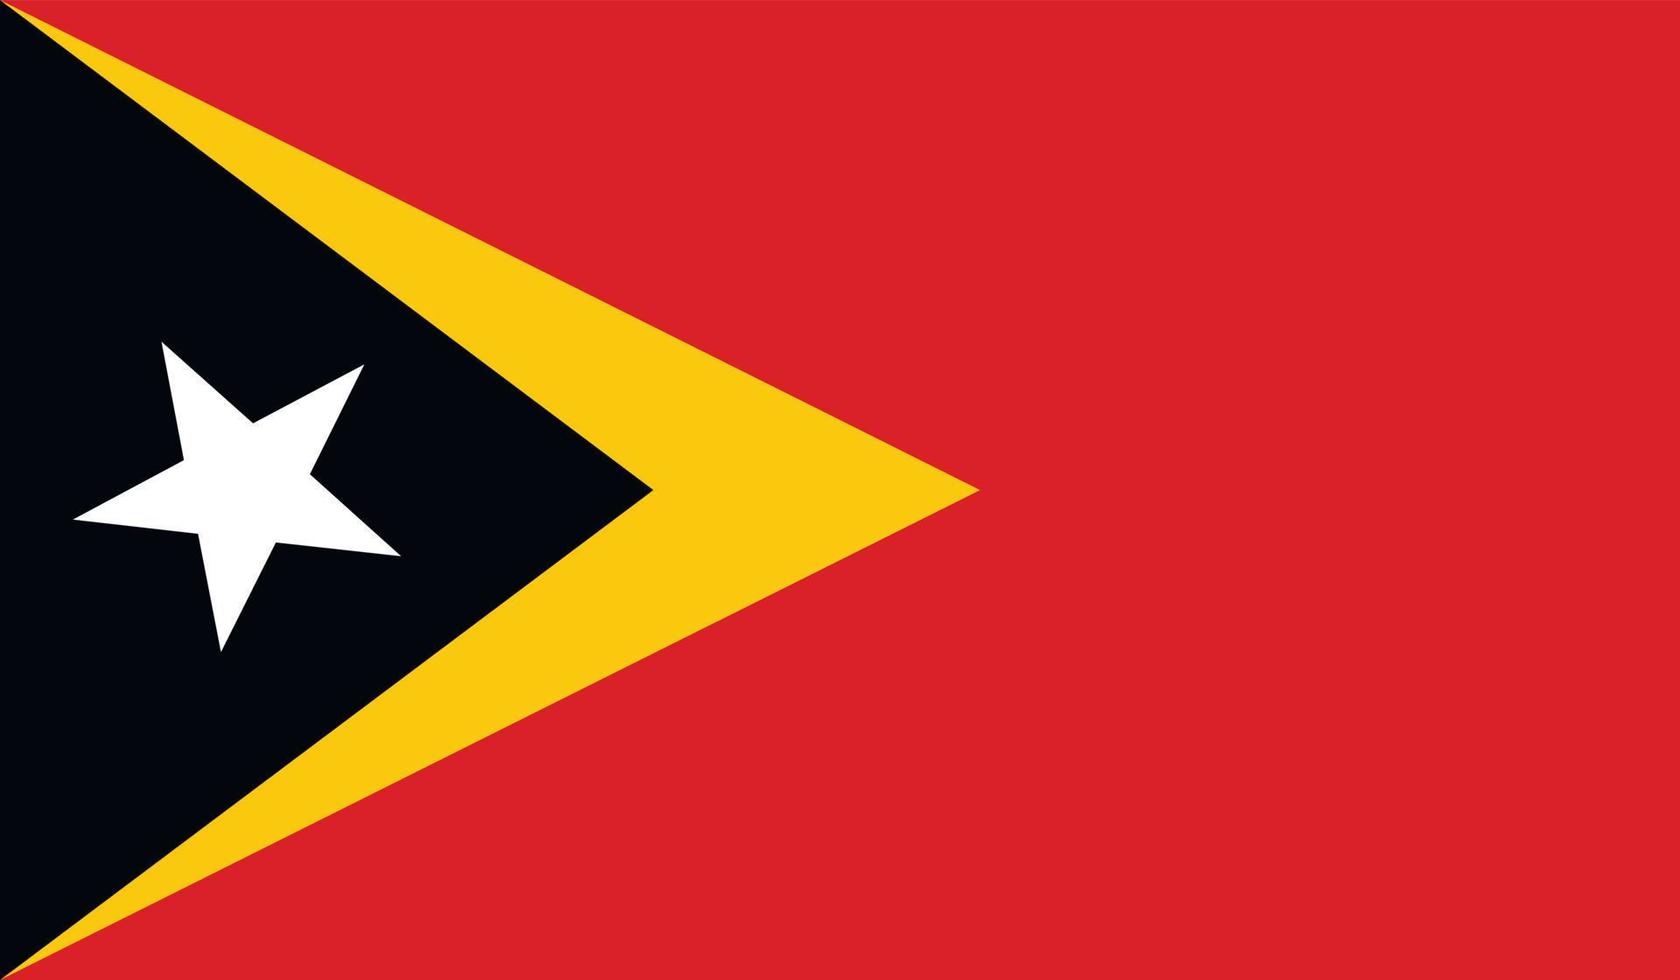 East Timor flag image vector